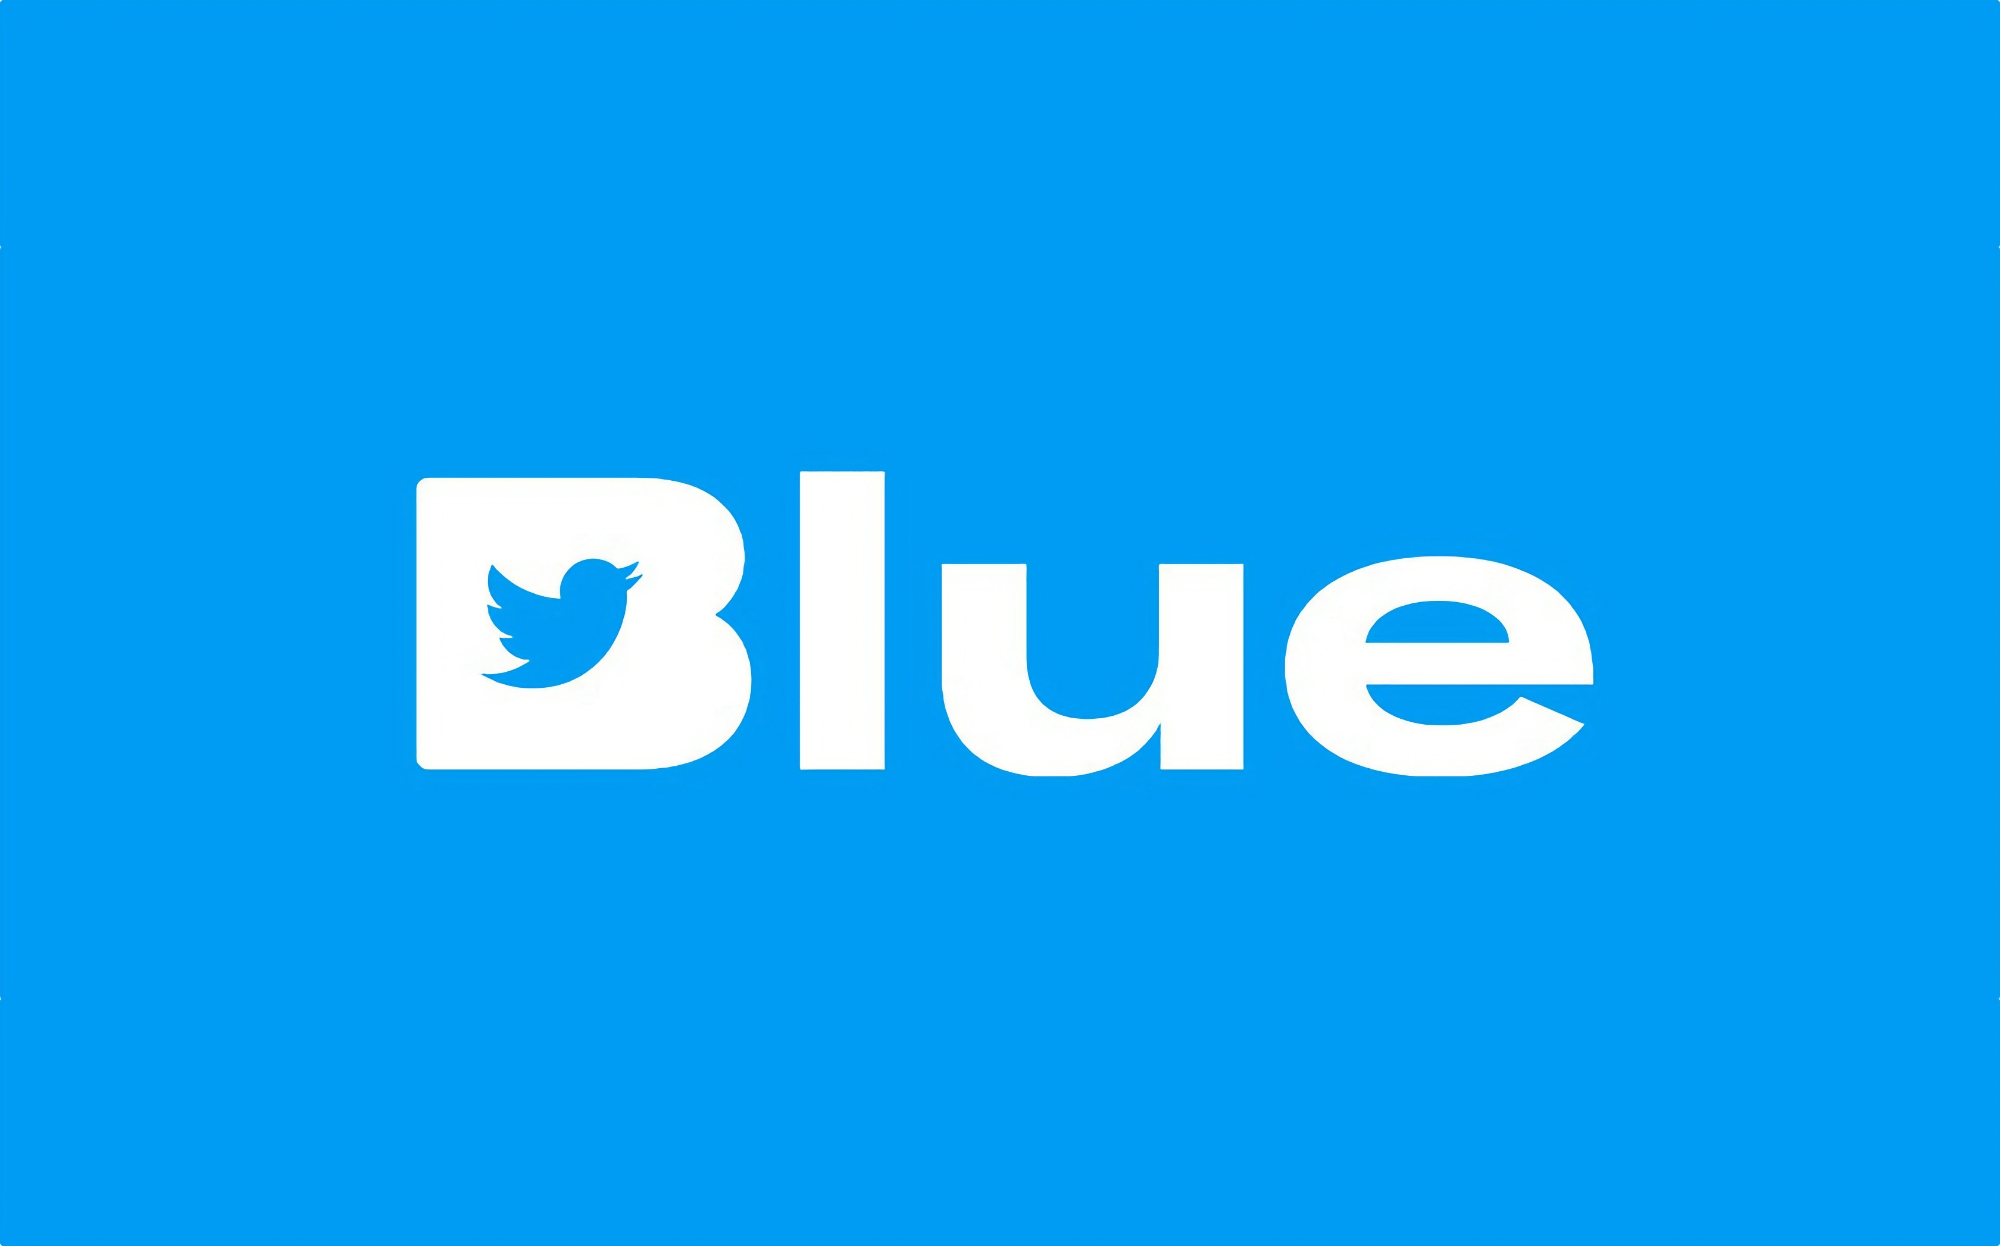 La suscripción de 11 dólares al mes de Twitter Blue ya está disponible para los usuarios de Android